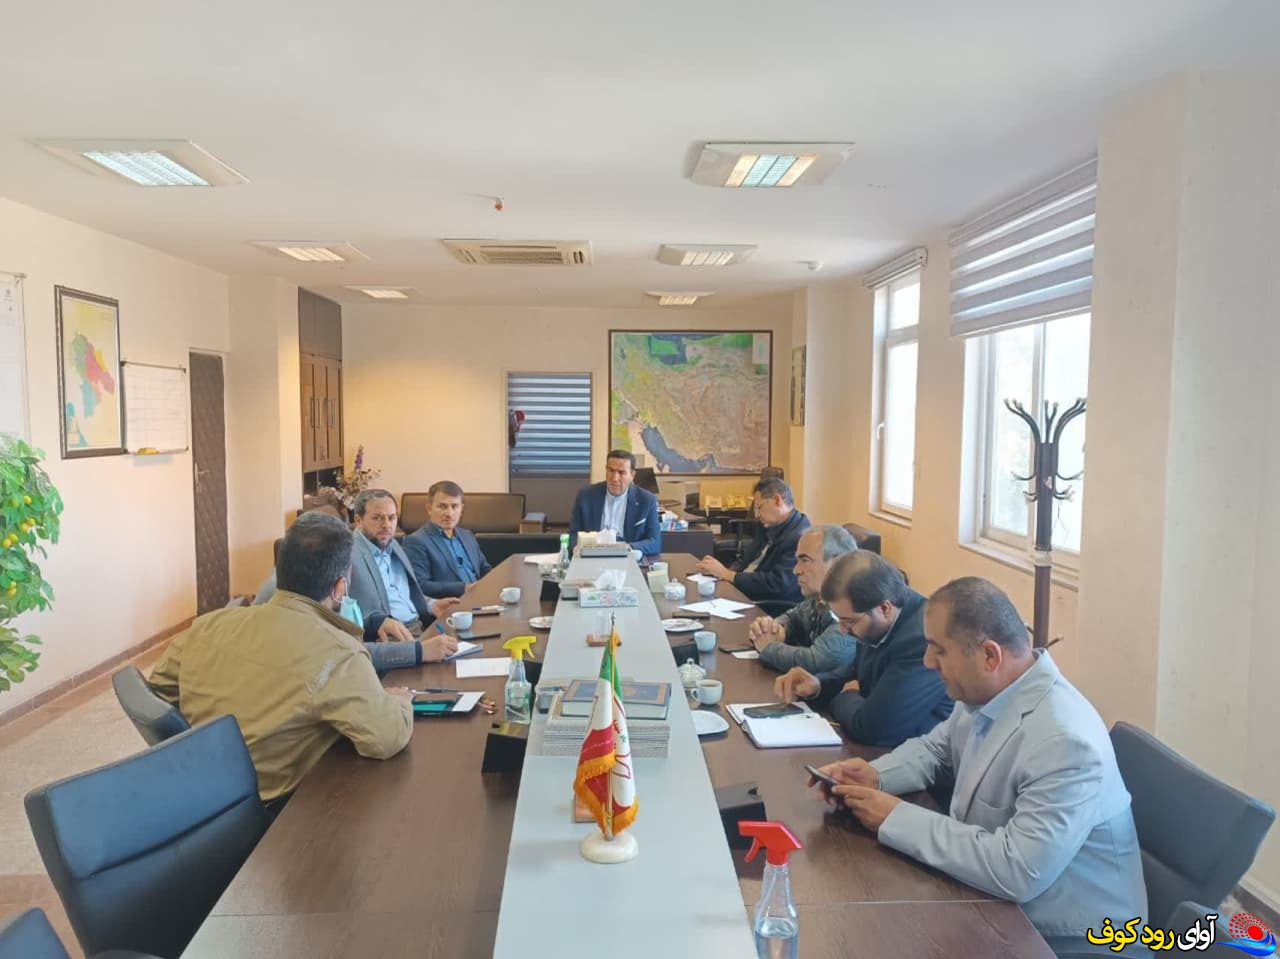 تشکیل جلسه ای در استانداری به منظور پیگیری مصوبات سفر مسئولین استان به شهرستان بهمئی/تصاویر